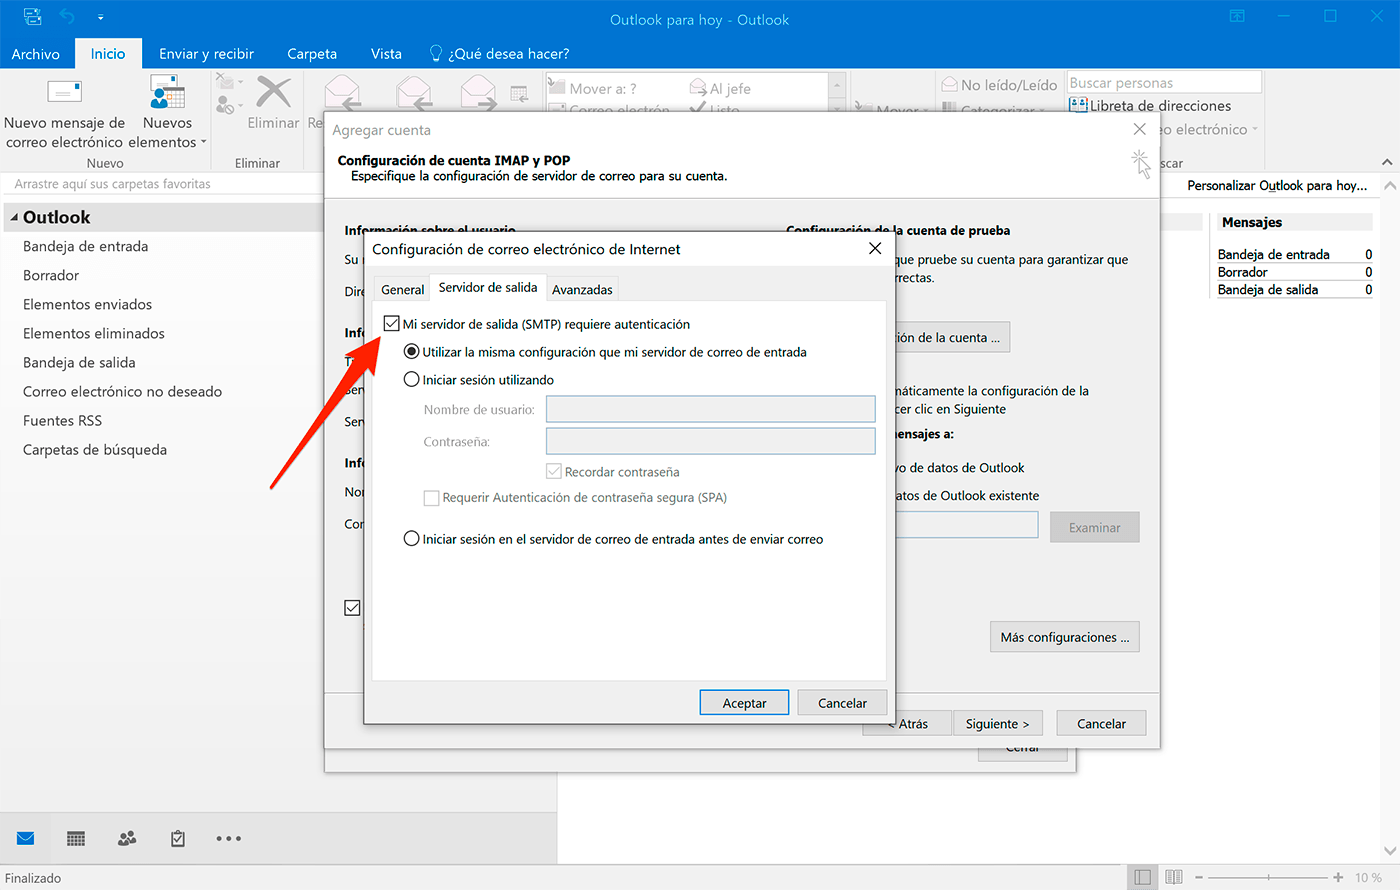 Outlook 2016 en Windows 10: Configuración de la cuenta, Más configuraciones, Servidor de salida y activar "Mi servidor de salida (SMTP) requiere autenticación"